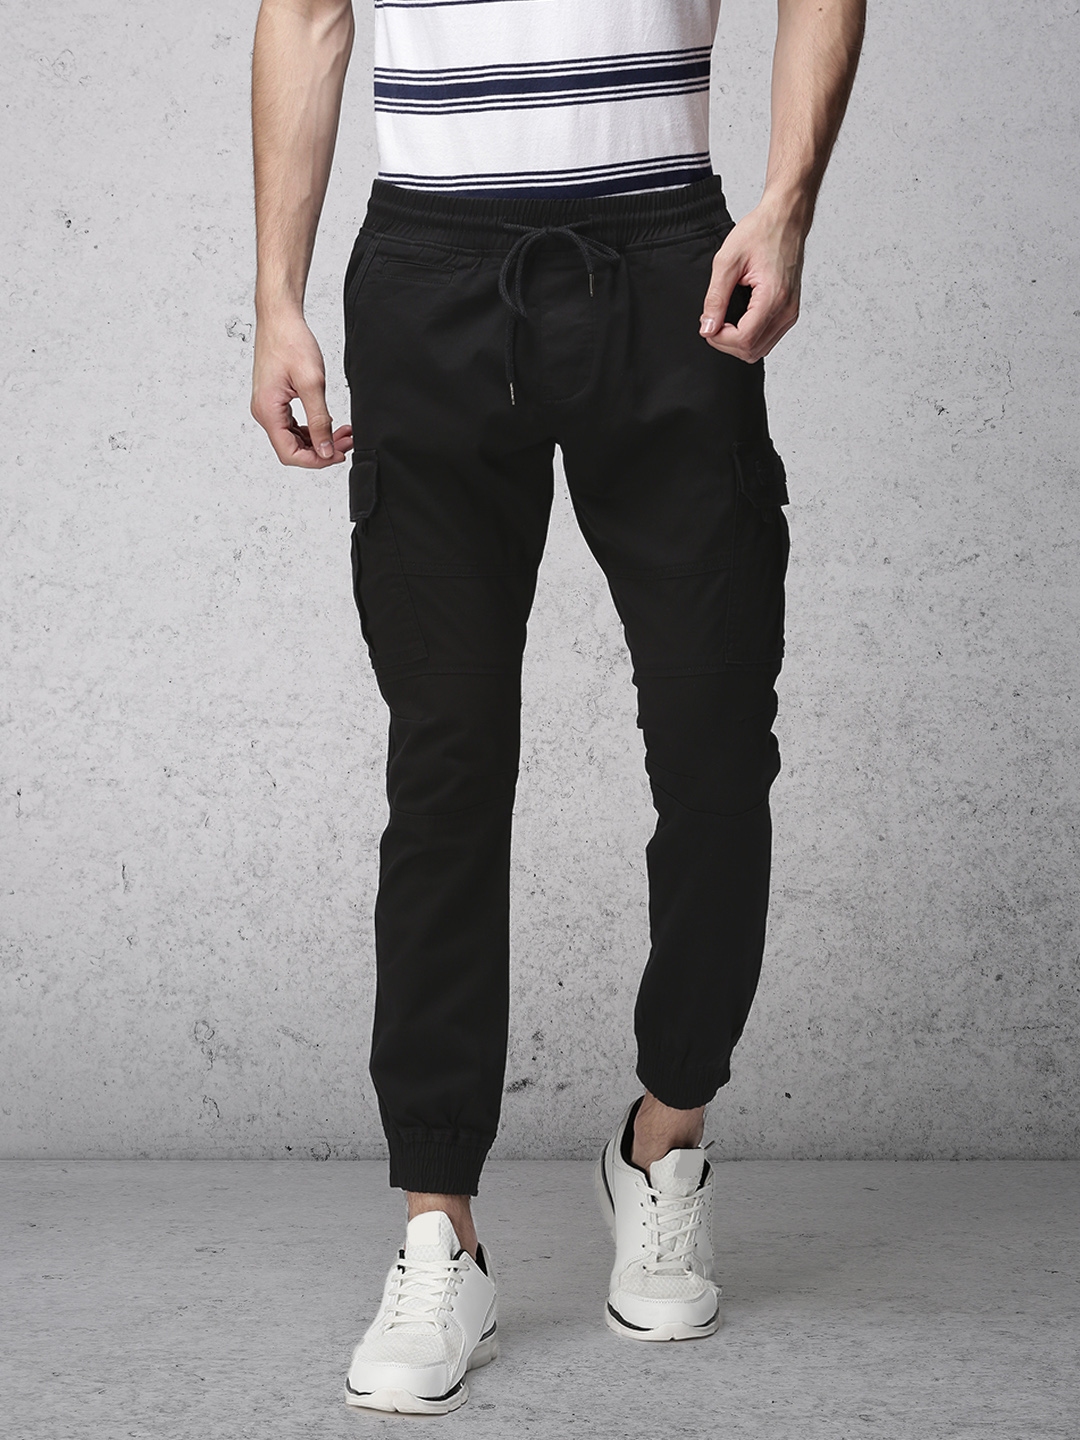 Men White Jeans Trousers Pants Jean Baggy Streetwear Denim Korean Fashion  Men  eBay